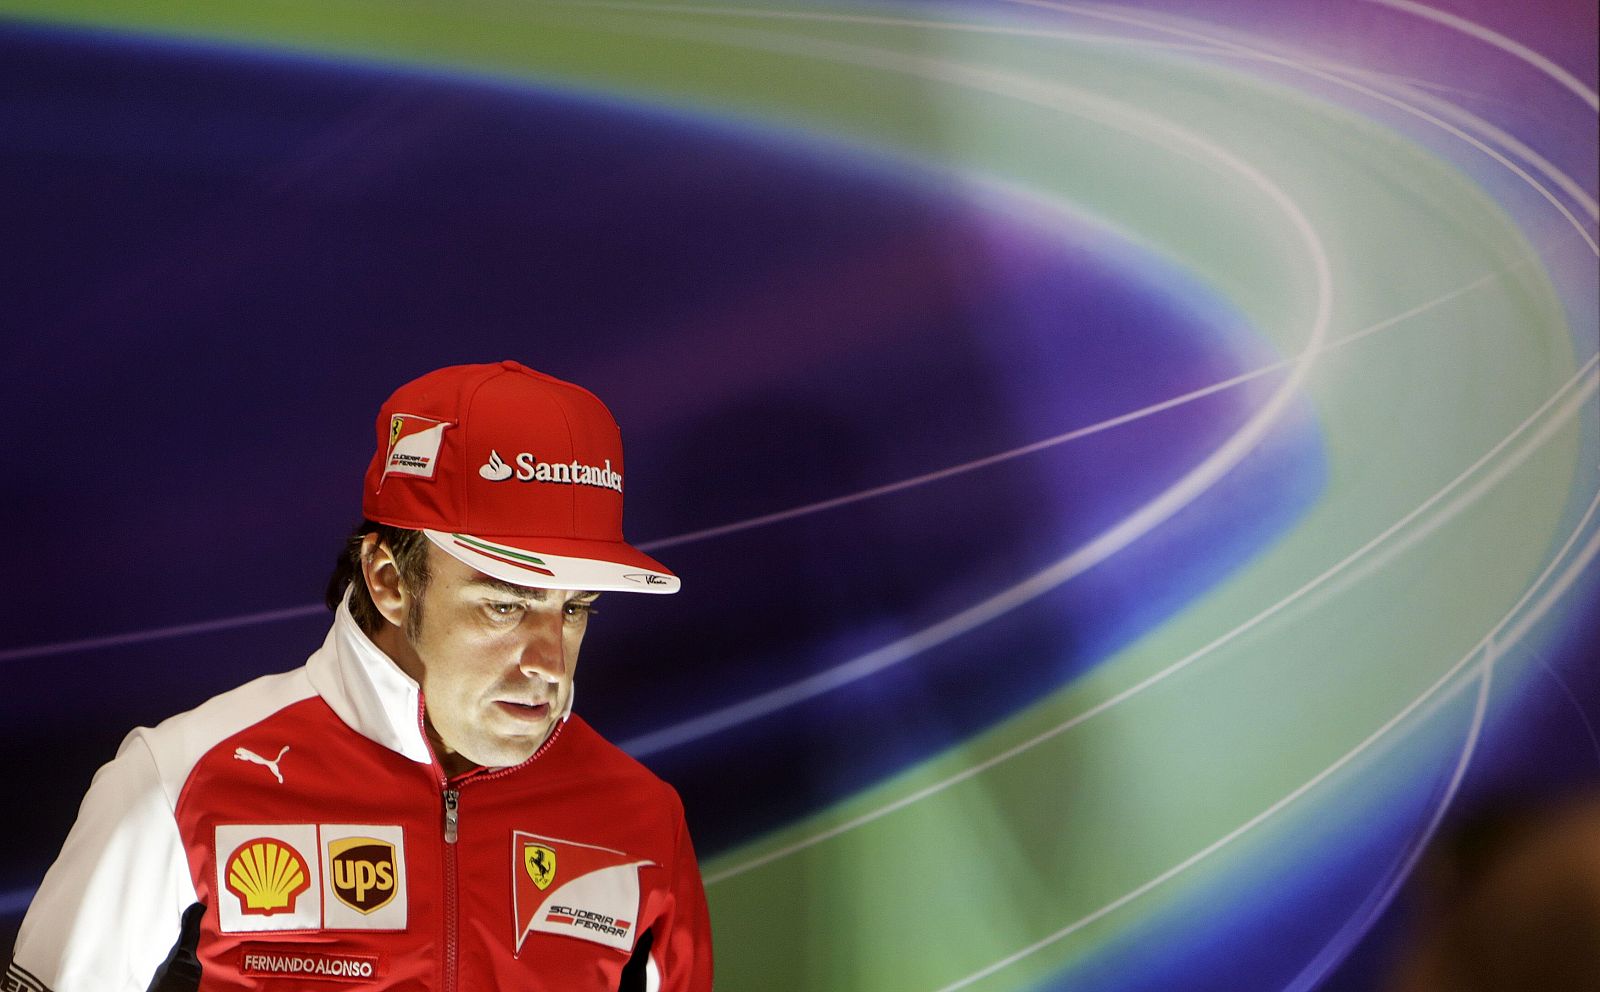 Imagen del pilot español de Ferrari, Fernando Alonso, antes de entrar a la rueda de prensa.